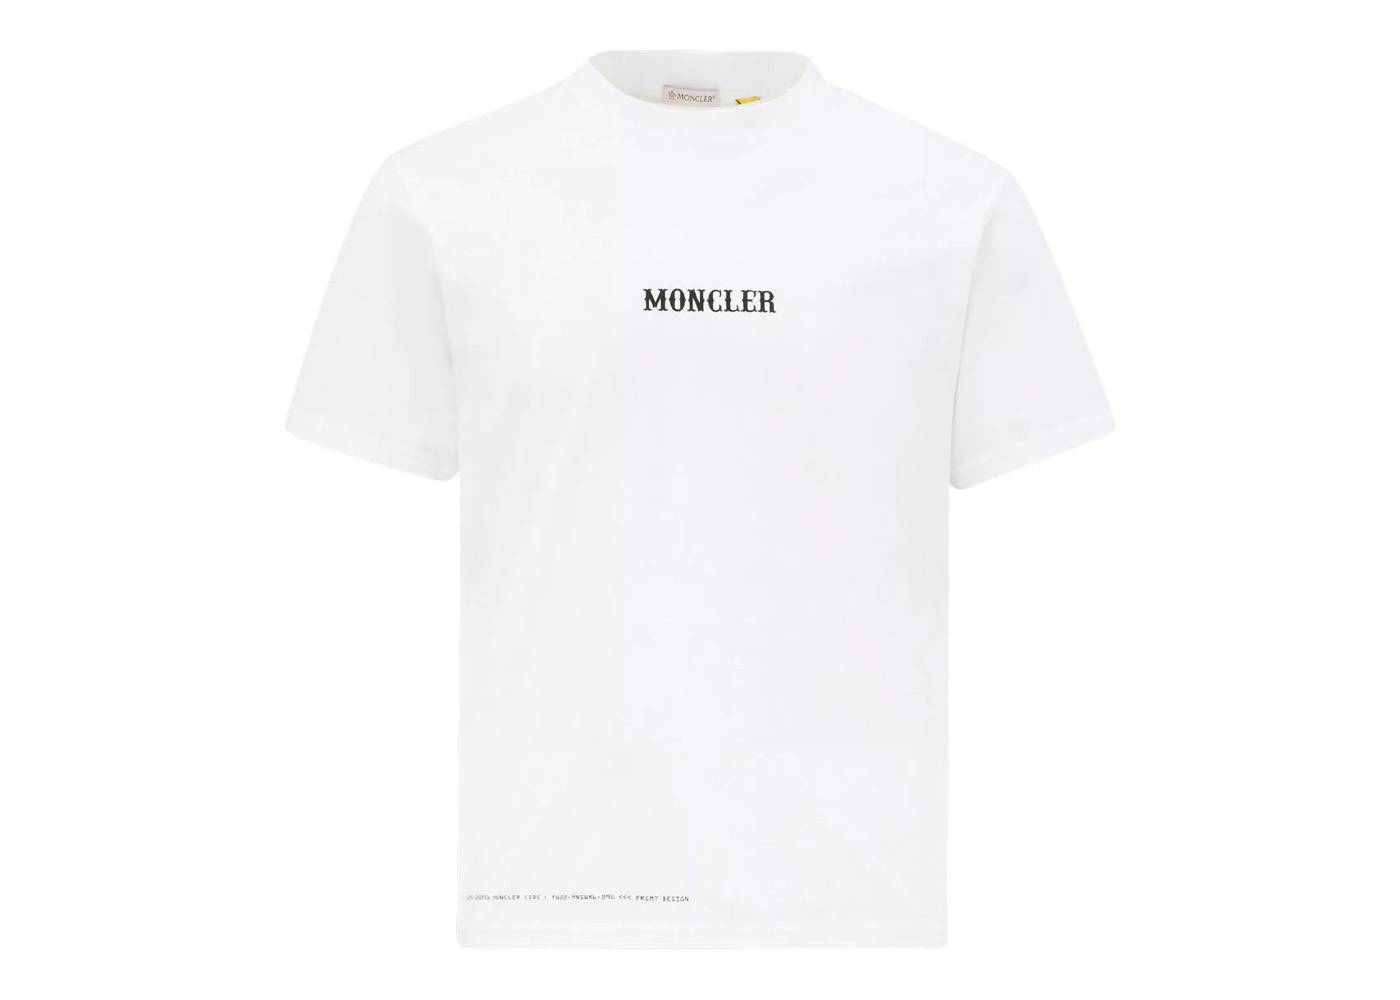 Moncler Hiroshi Fujiwara x Fragment Circus Motif T-Shirt Optical White